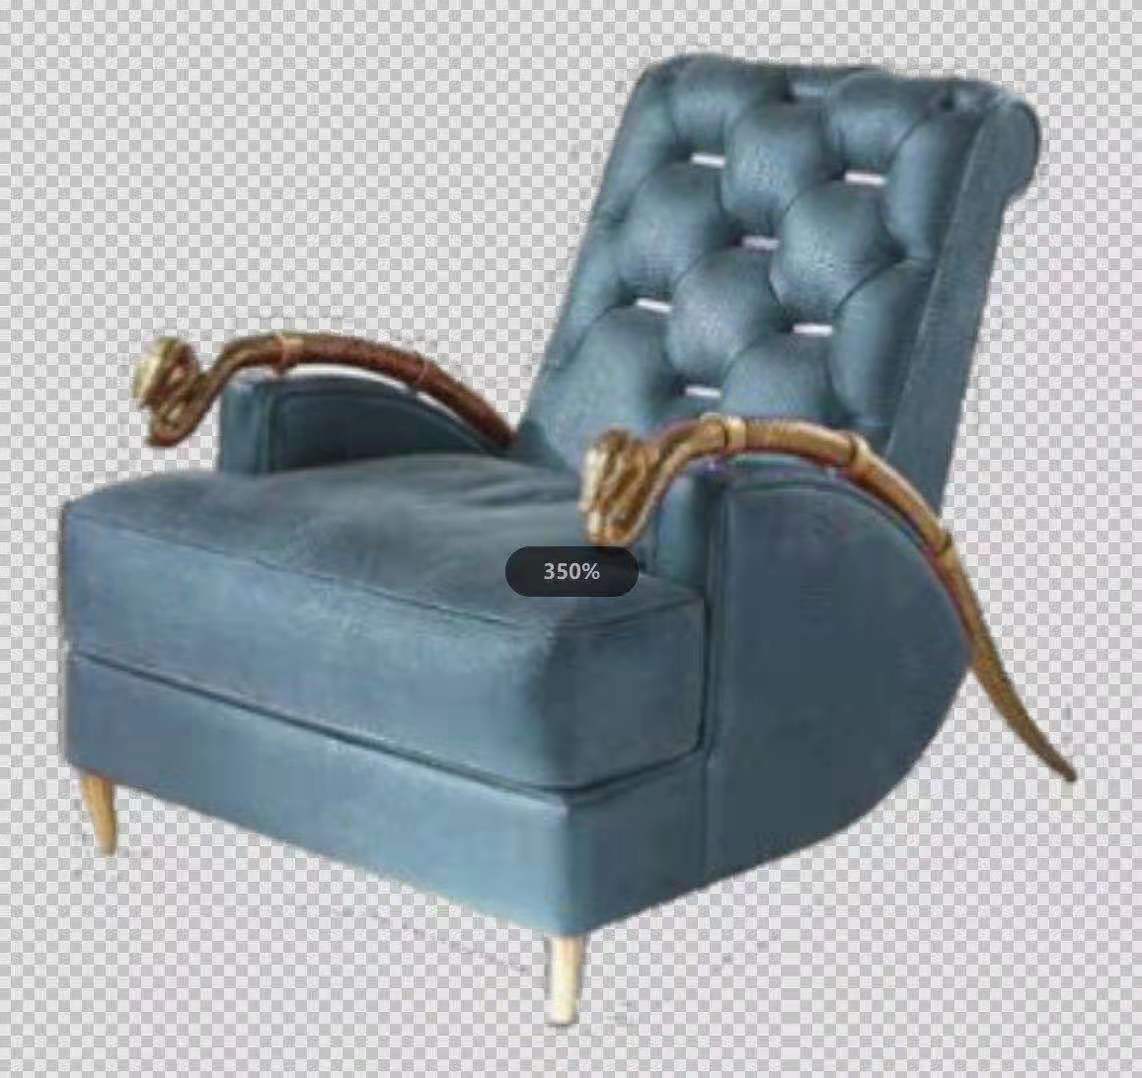 Taburete de pie de cubierta cuadrada de muebles de sala de estar de hotel de oficina en casa de tela moderna con patas de metal de acero inoxidable